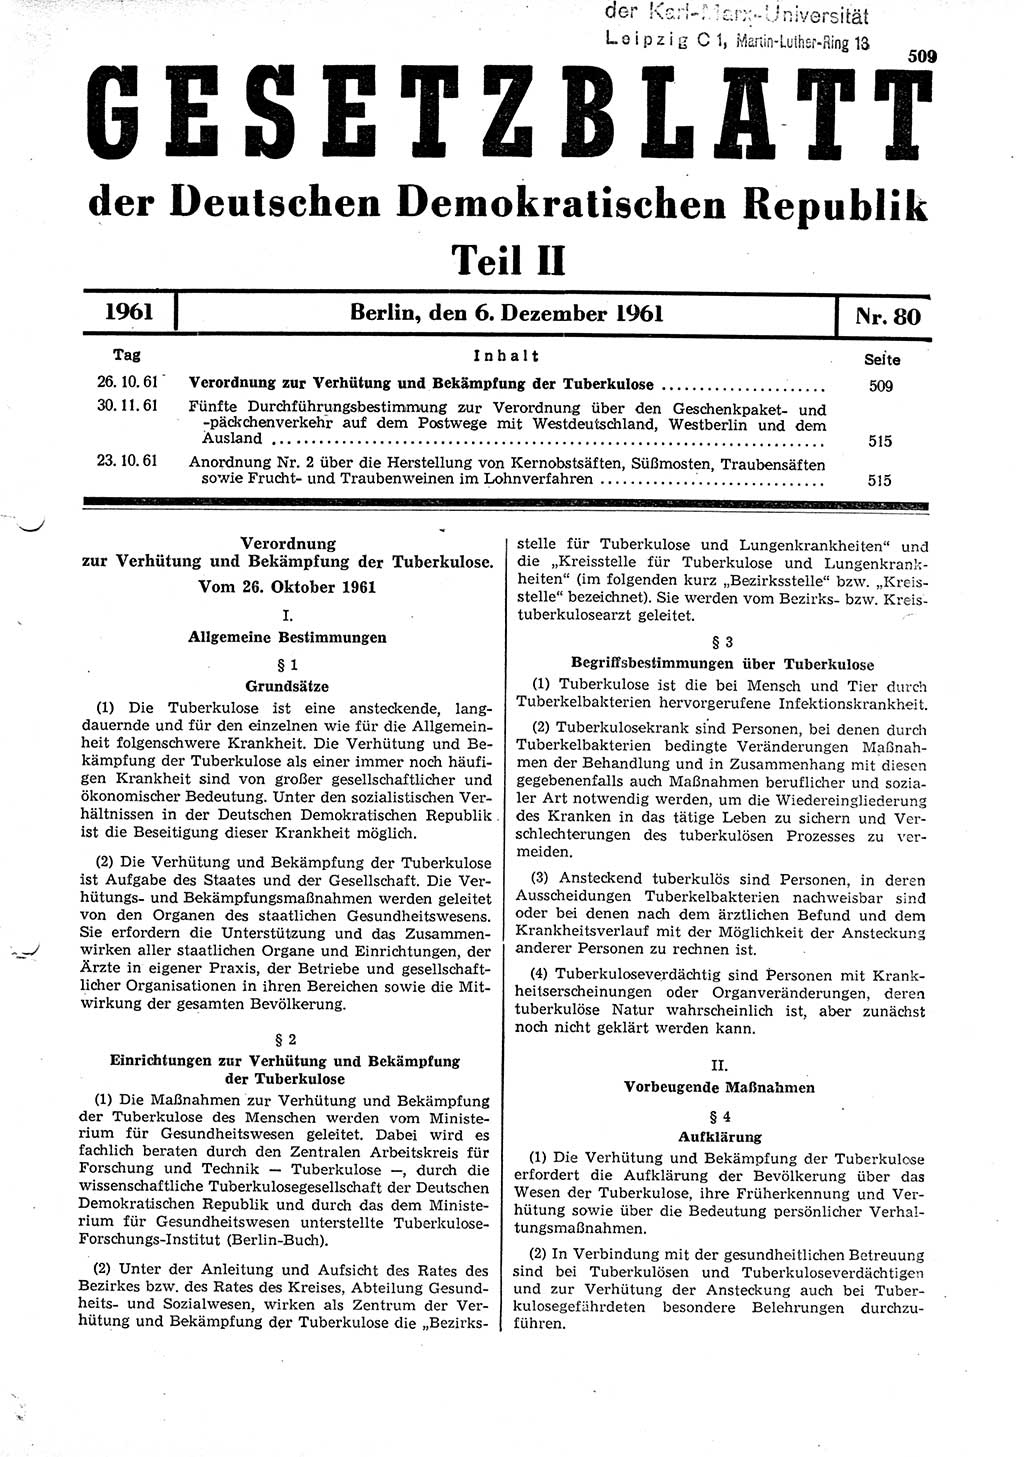 Gesetzblatt (GBl.) der Deutschen Demokratischen Republik (DDR) Teil ⅠⅠ 1961, Seite 509 (GBl. DDR ⅠⅠ 1961, S. 509)